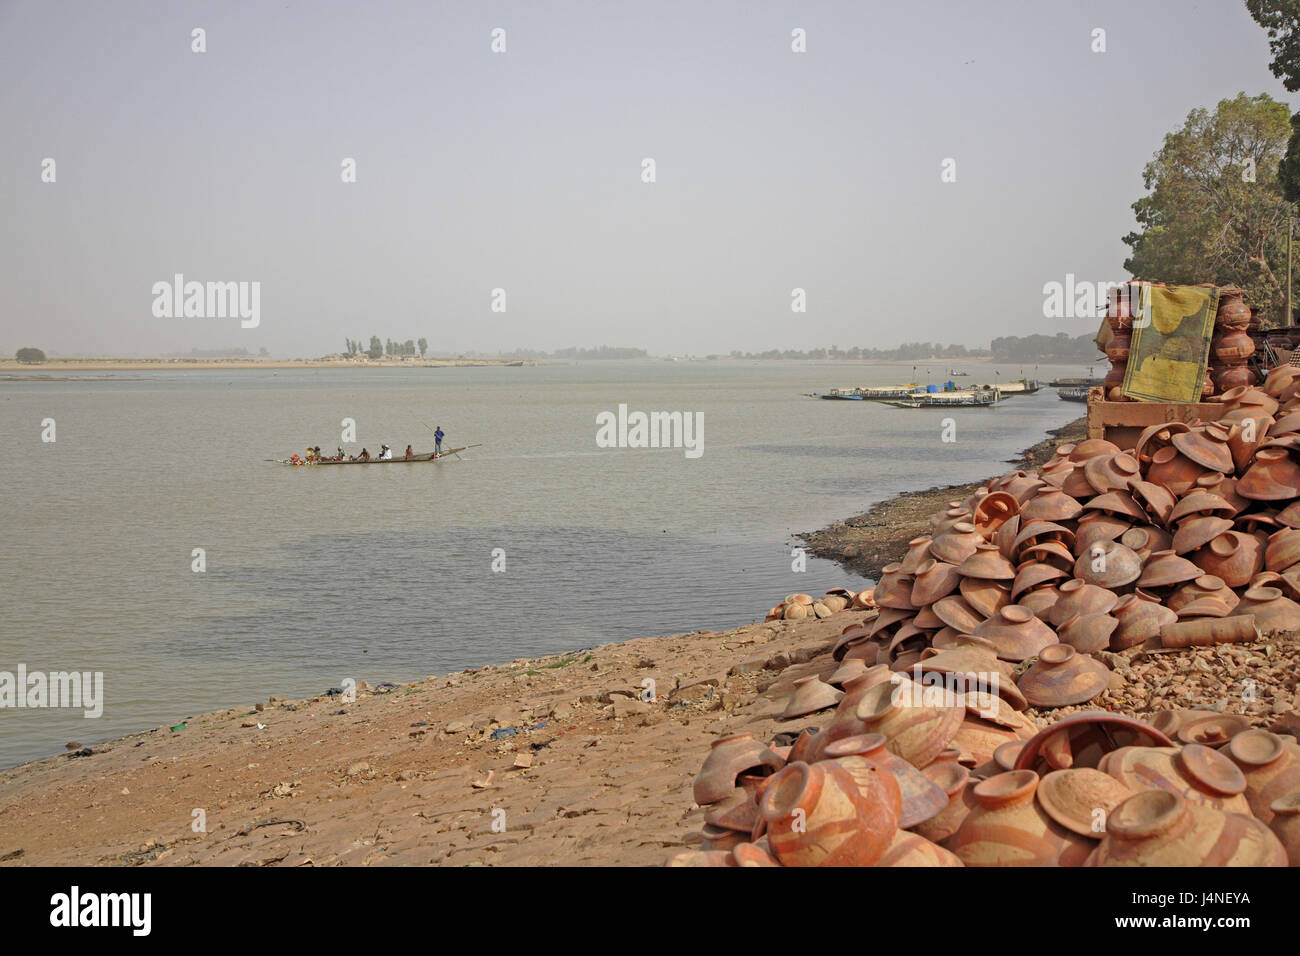 West-Afrika, Mali, Niger-Binnendelta, Stadt Mopti flux Bani, Ufer, Keramik, Pirogen, Aufnahme im Jahr 2007, Stockfoto